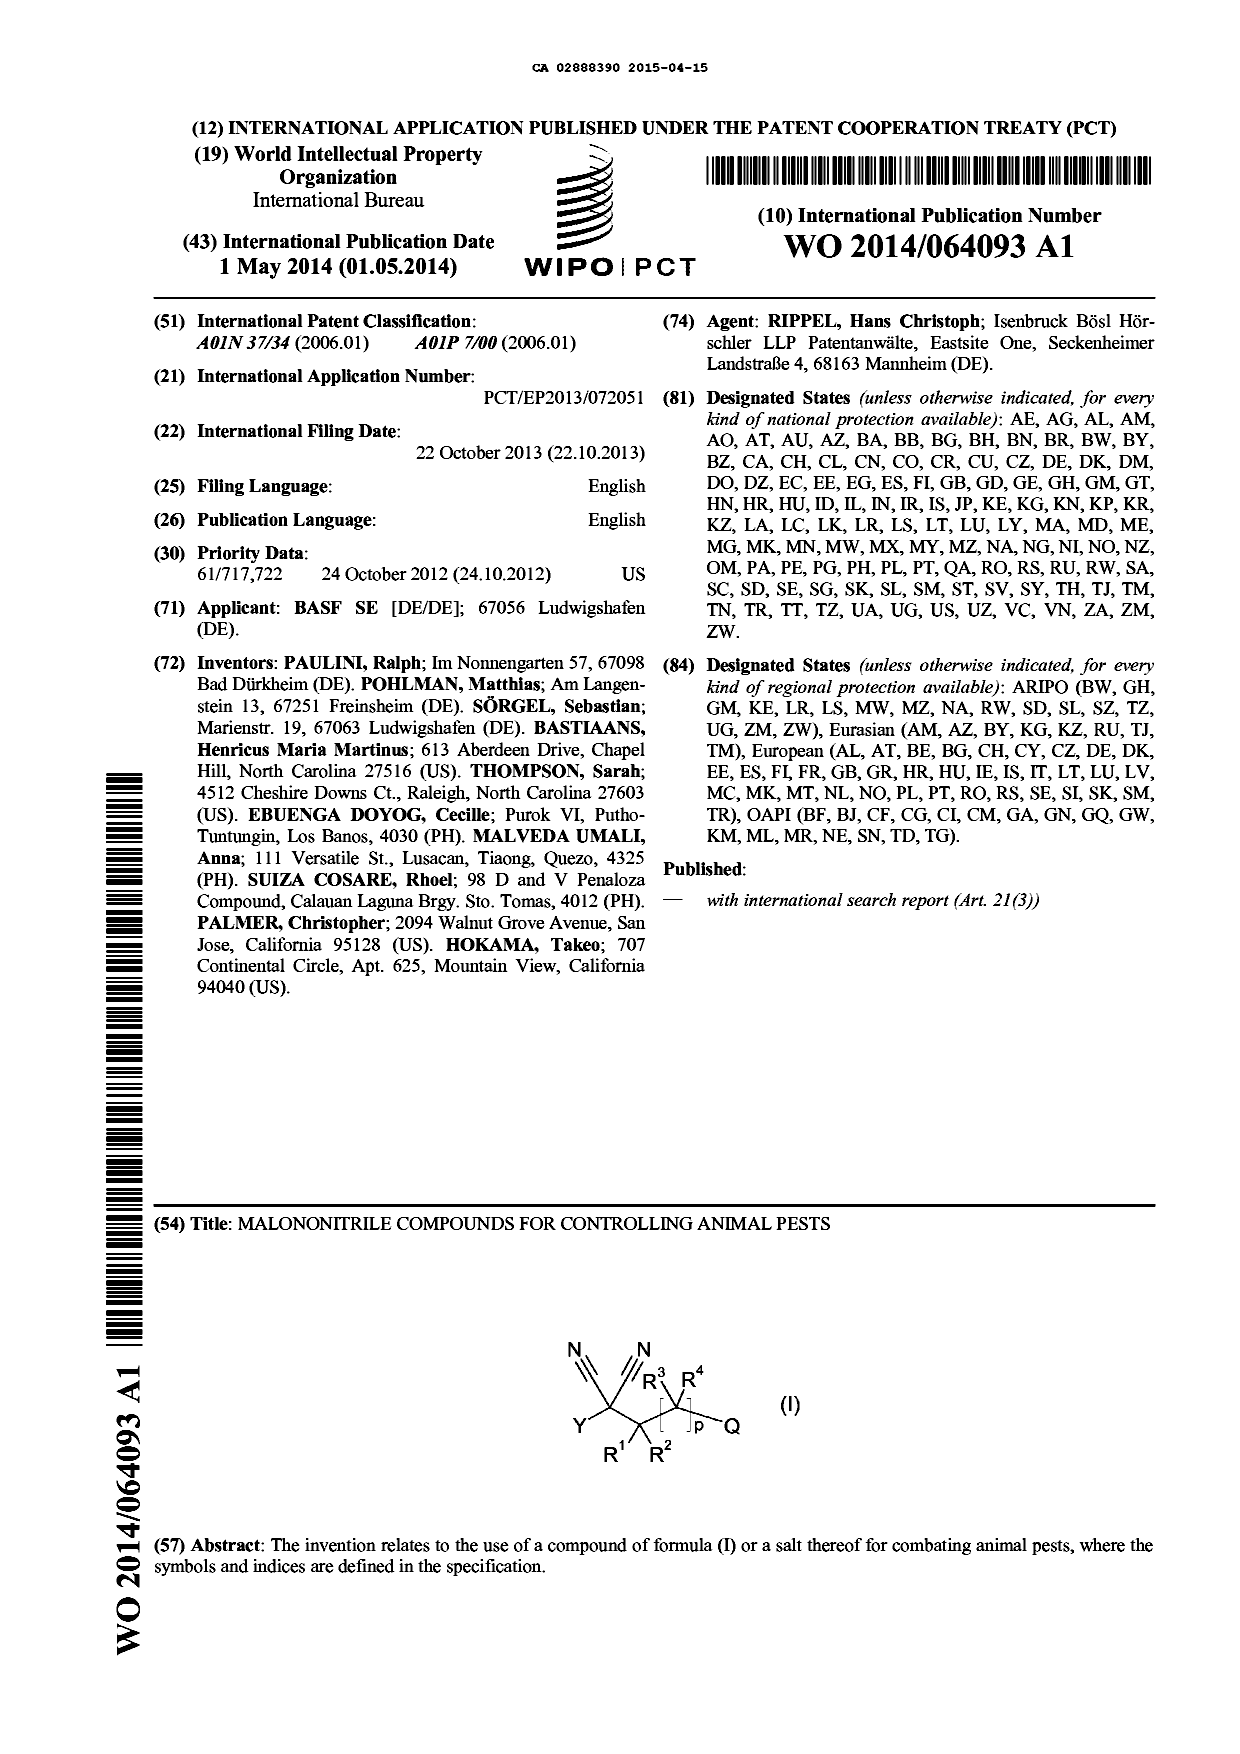 Document de brevet canadien 2888390. Abrégé 20141215. Image 1 de 1